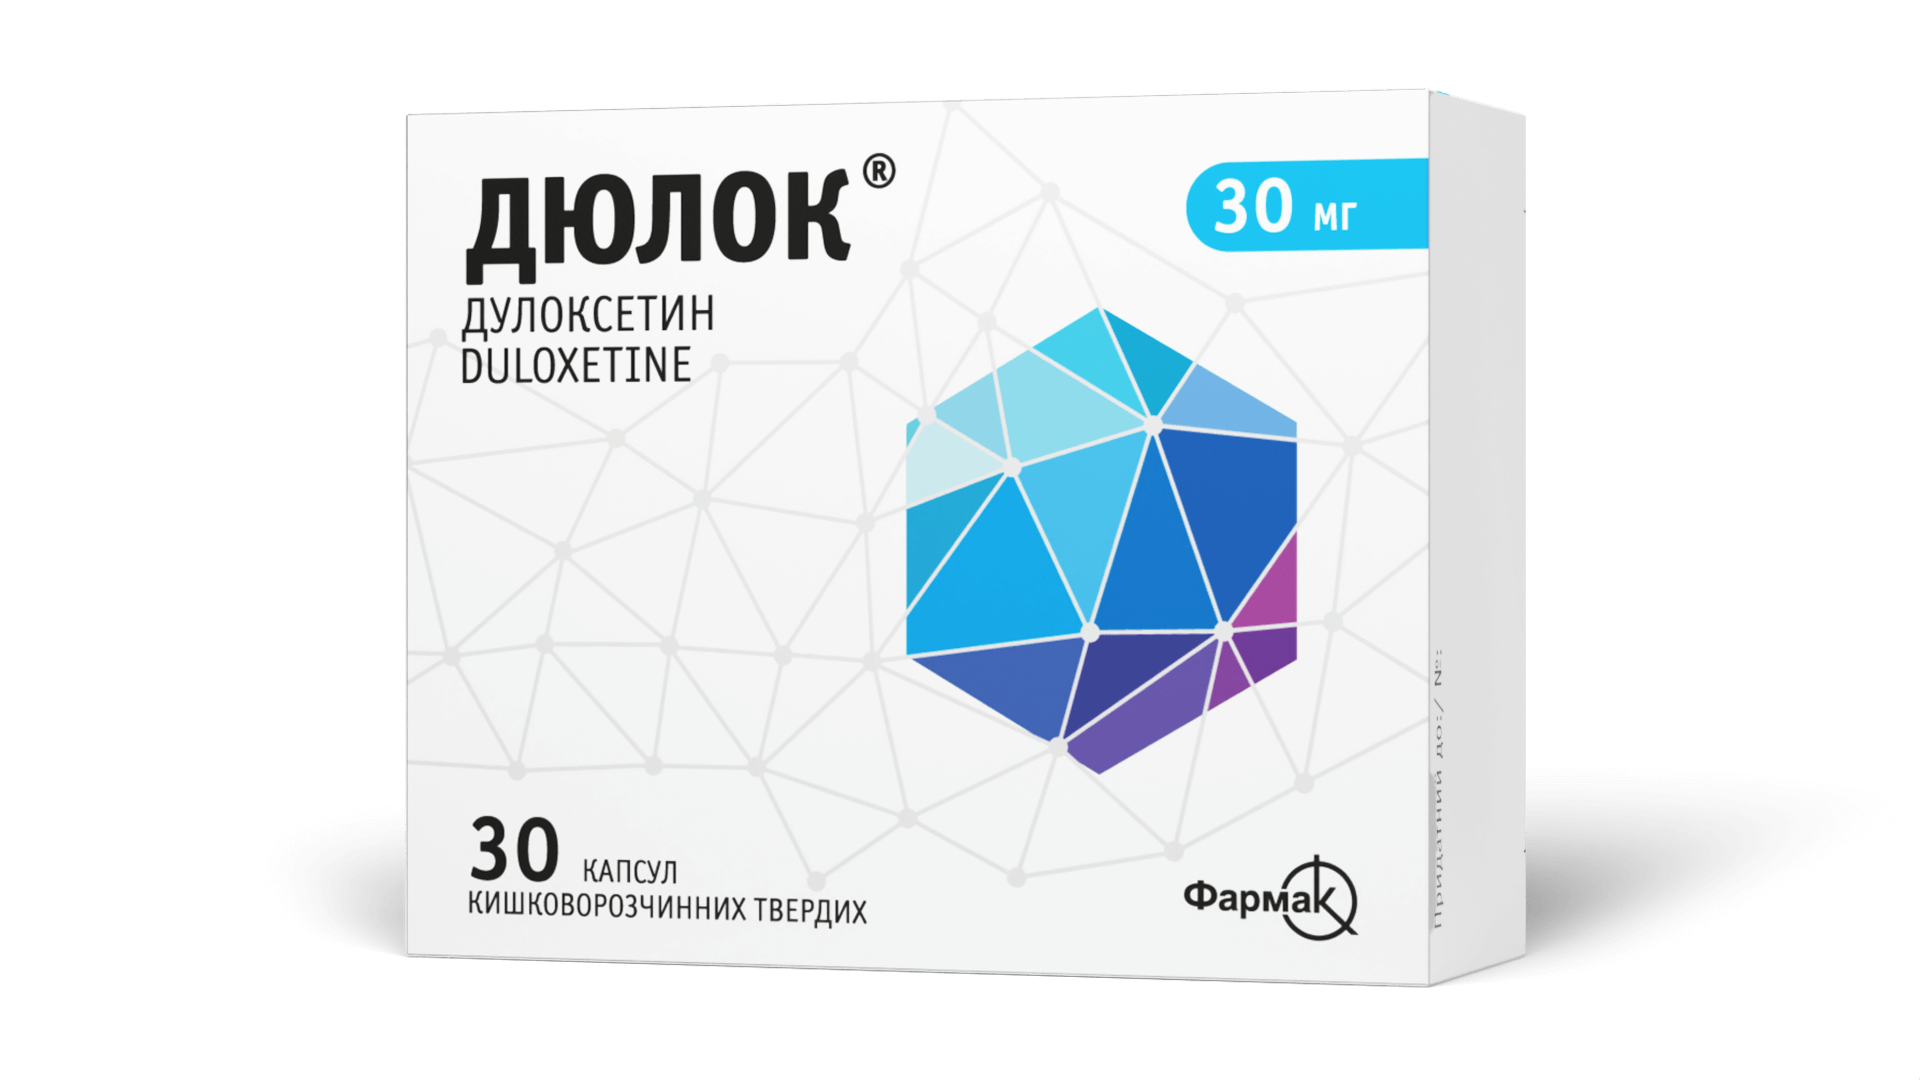 Дюлок® 30 мг (3)